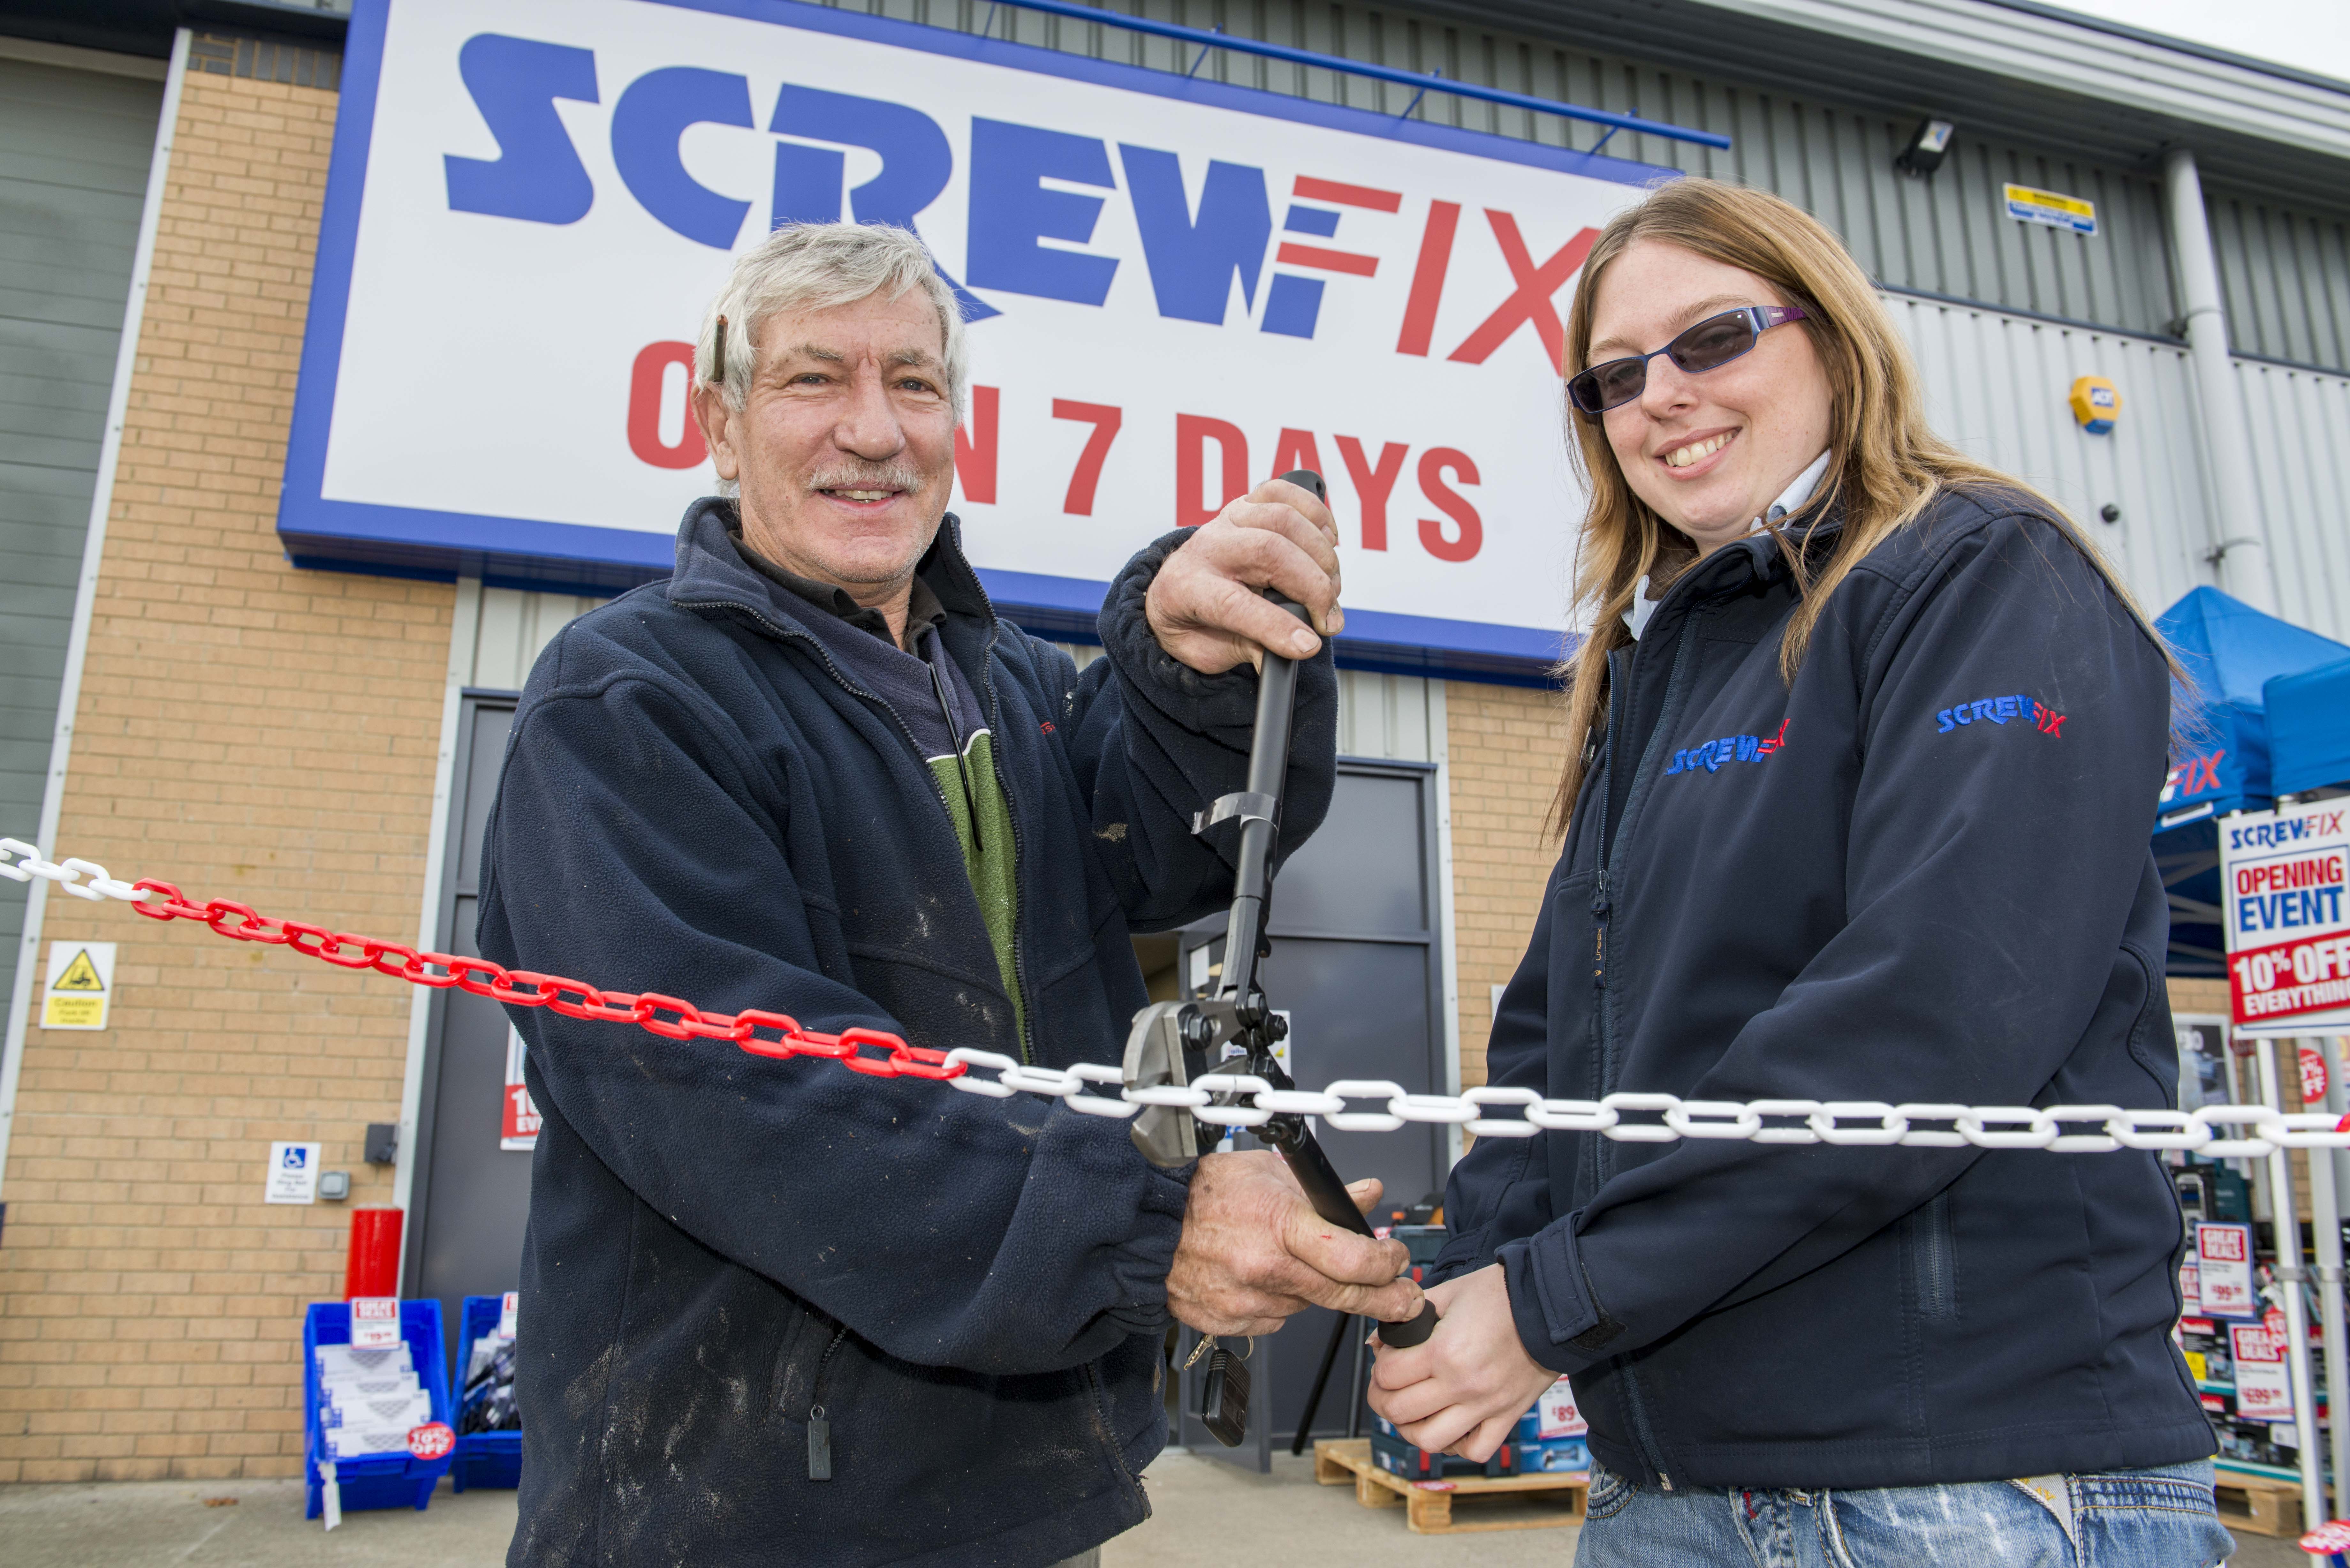 Screwfix opens its doors in Rushden